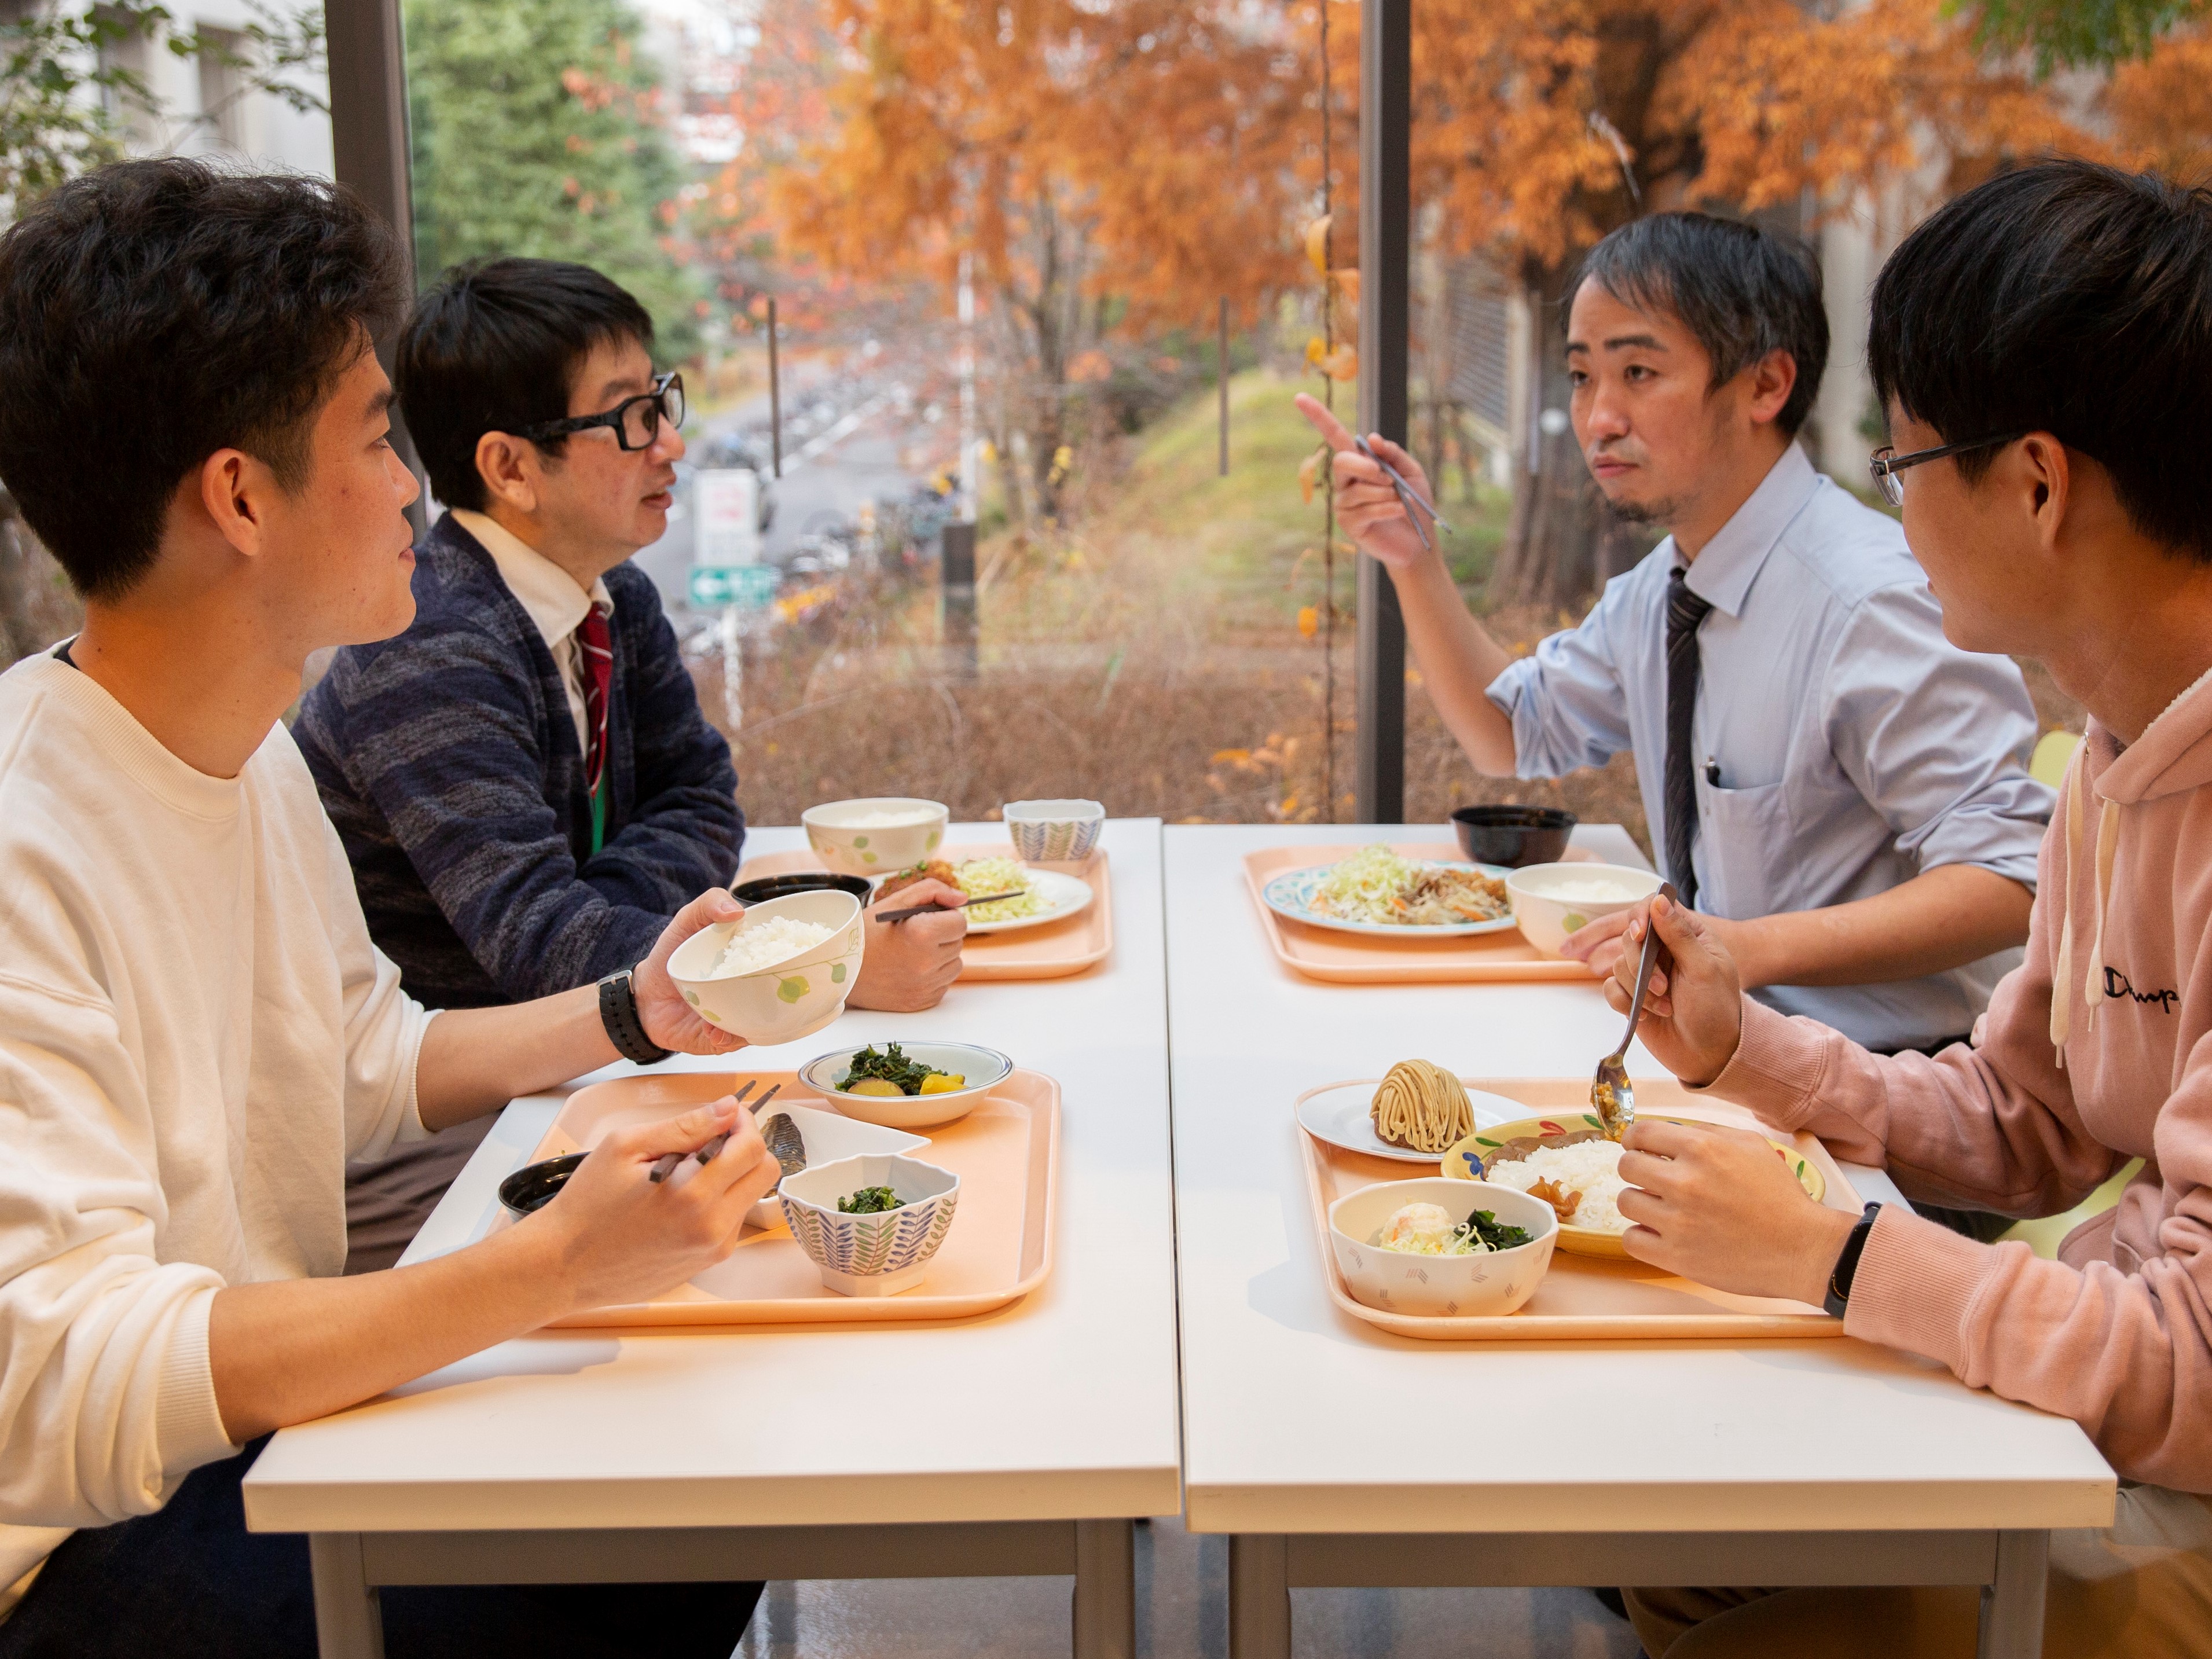 大学生になると友達だけでなく世代の違う人とも食堂で食事をすることも